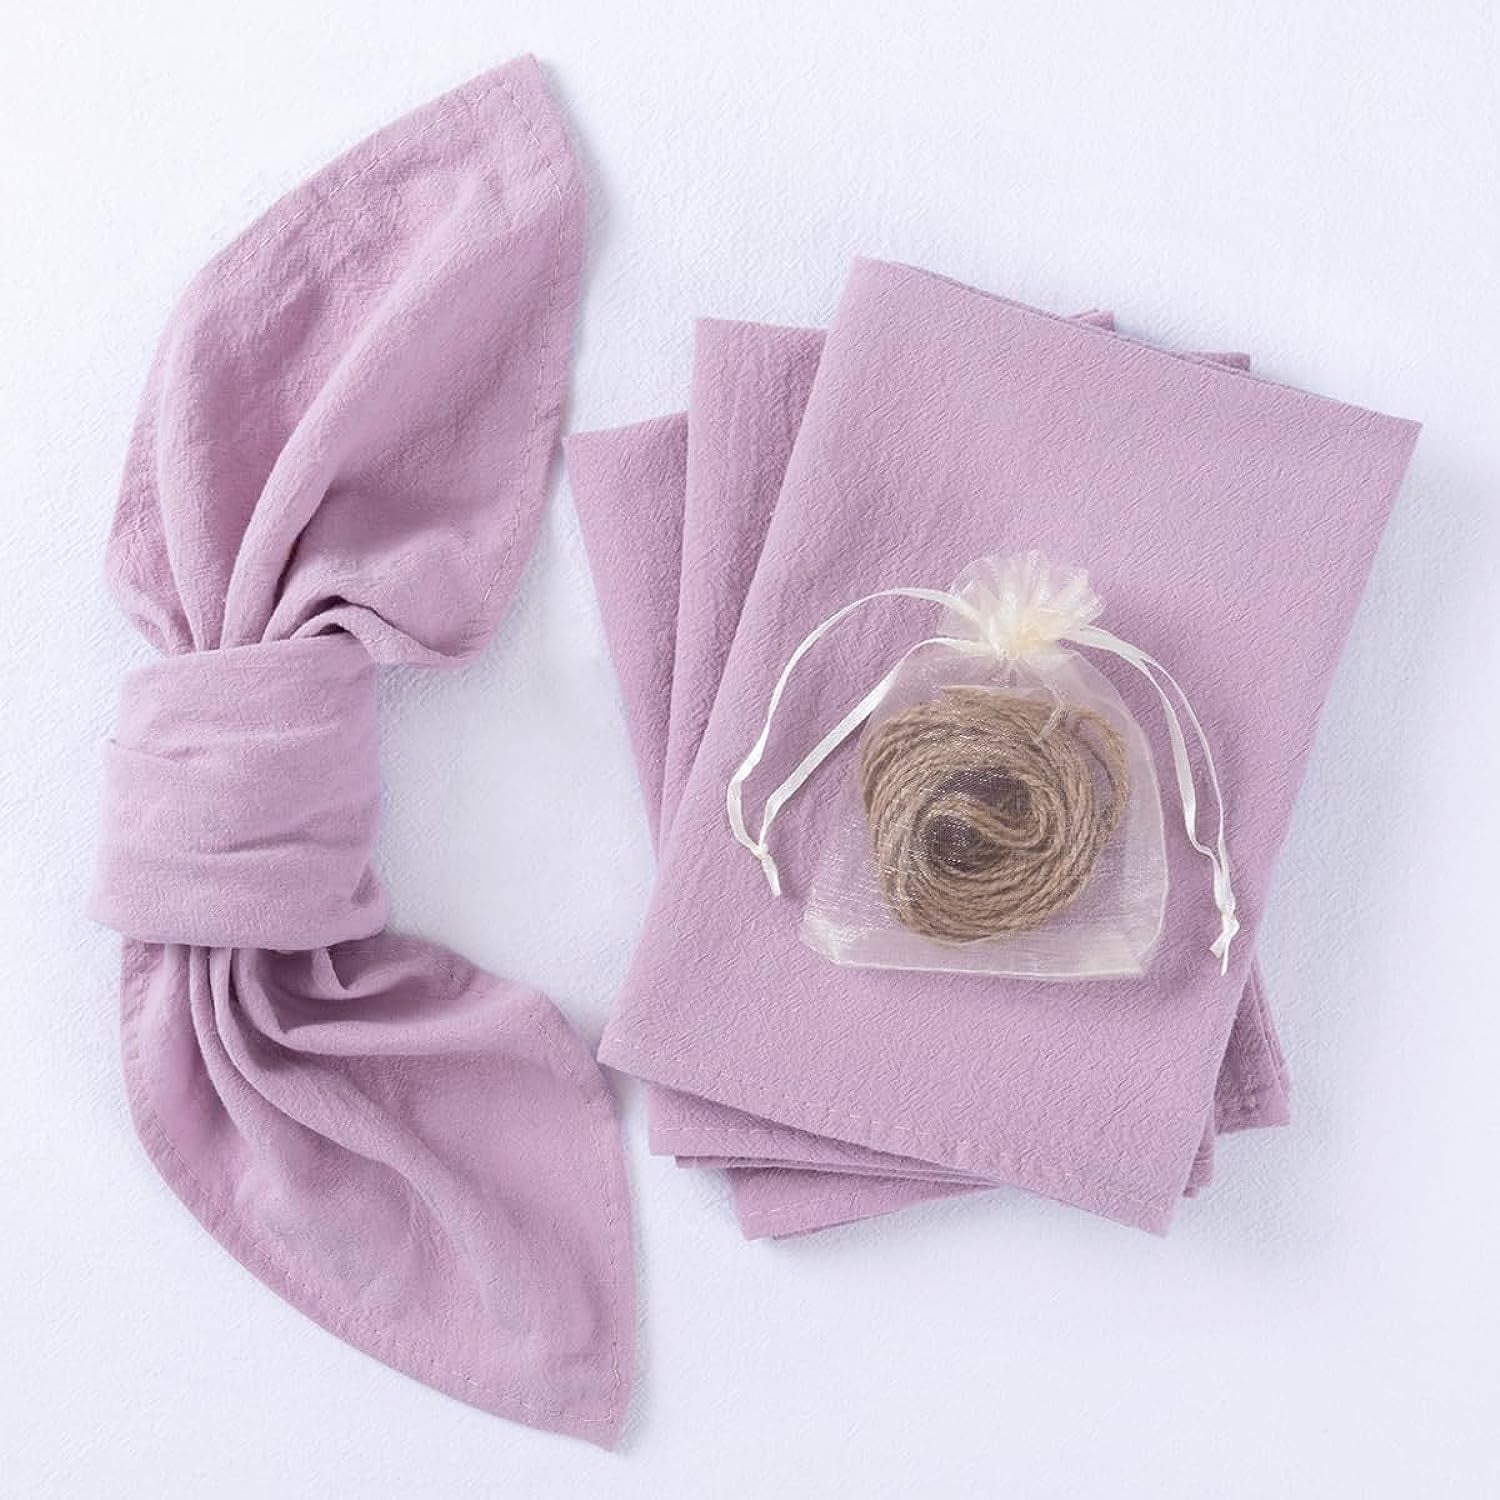 Encasa 100% Cotton Cloth Napkins Set of 12 with Natural Color & Size  17x17